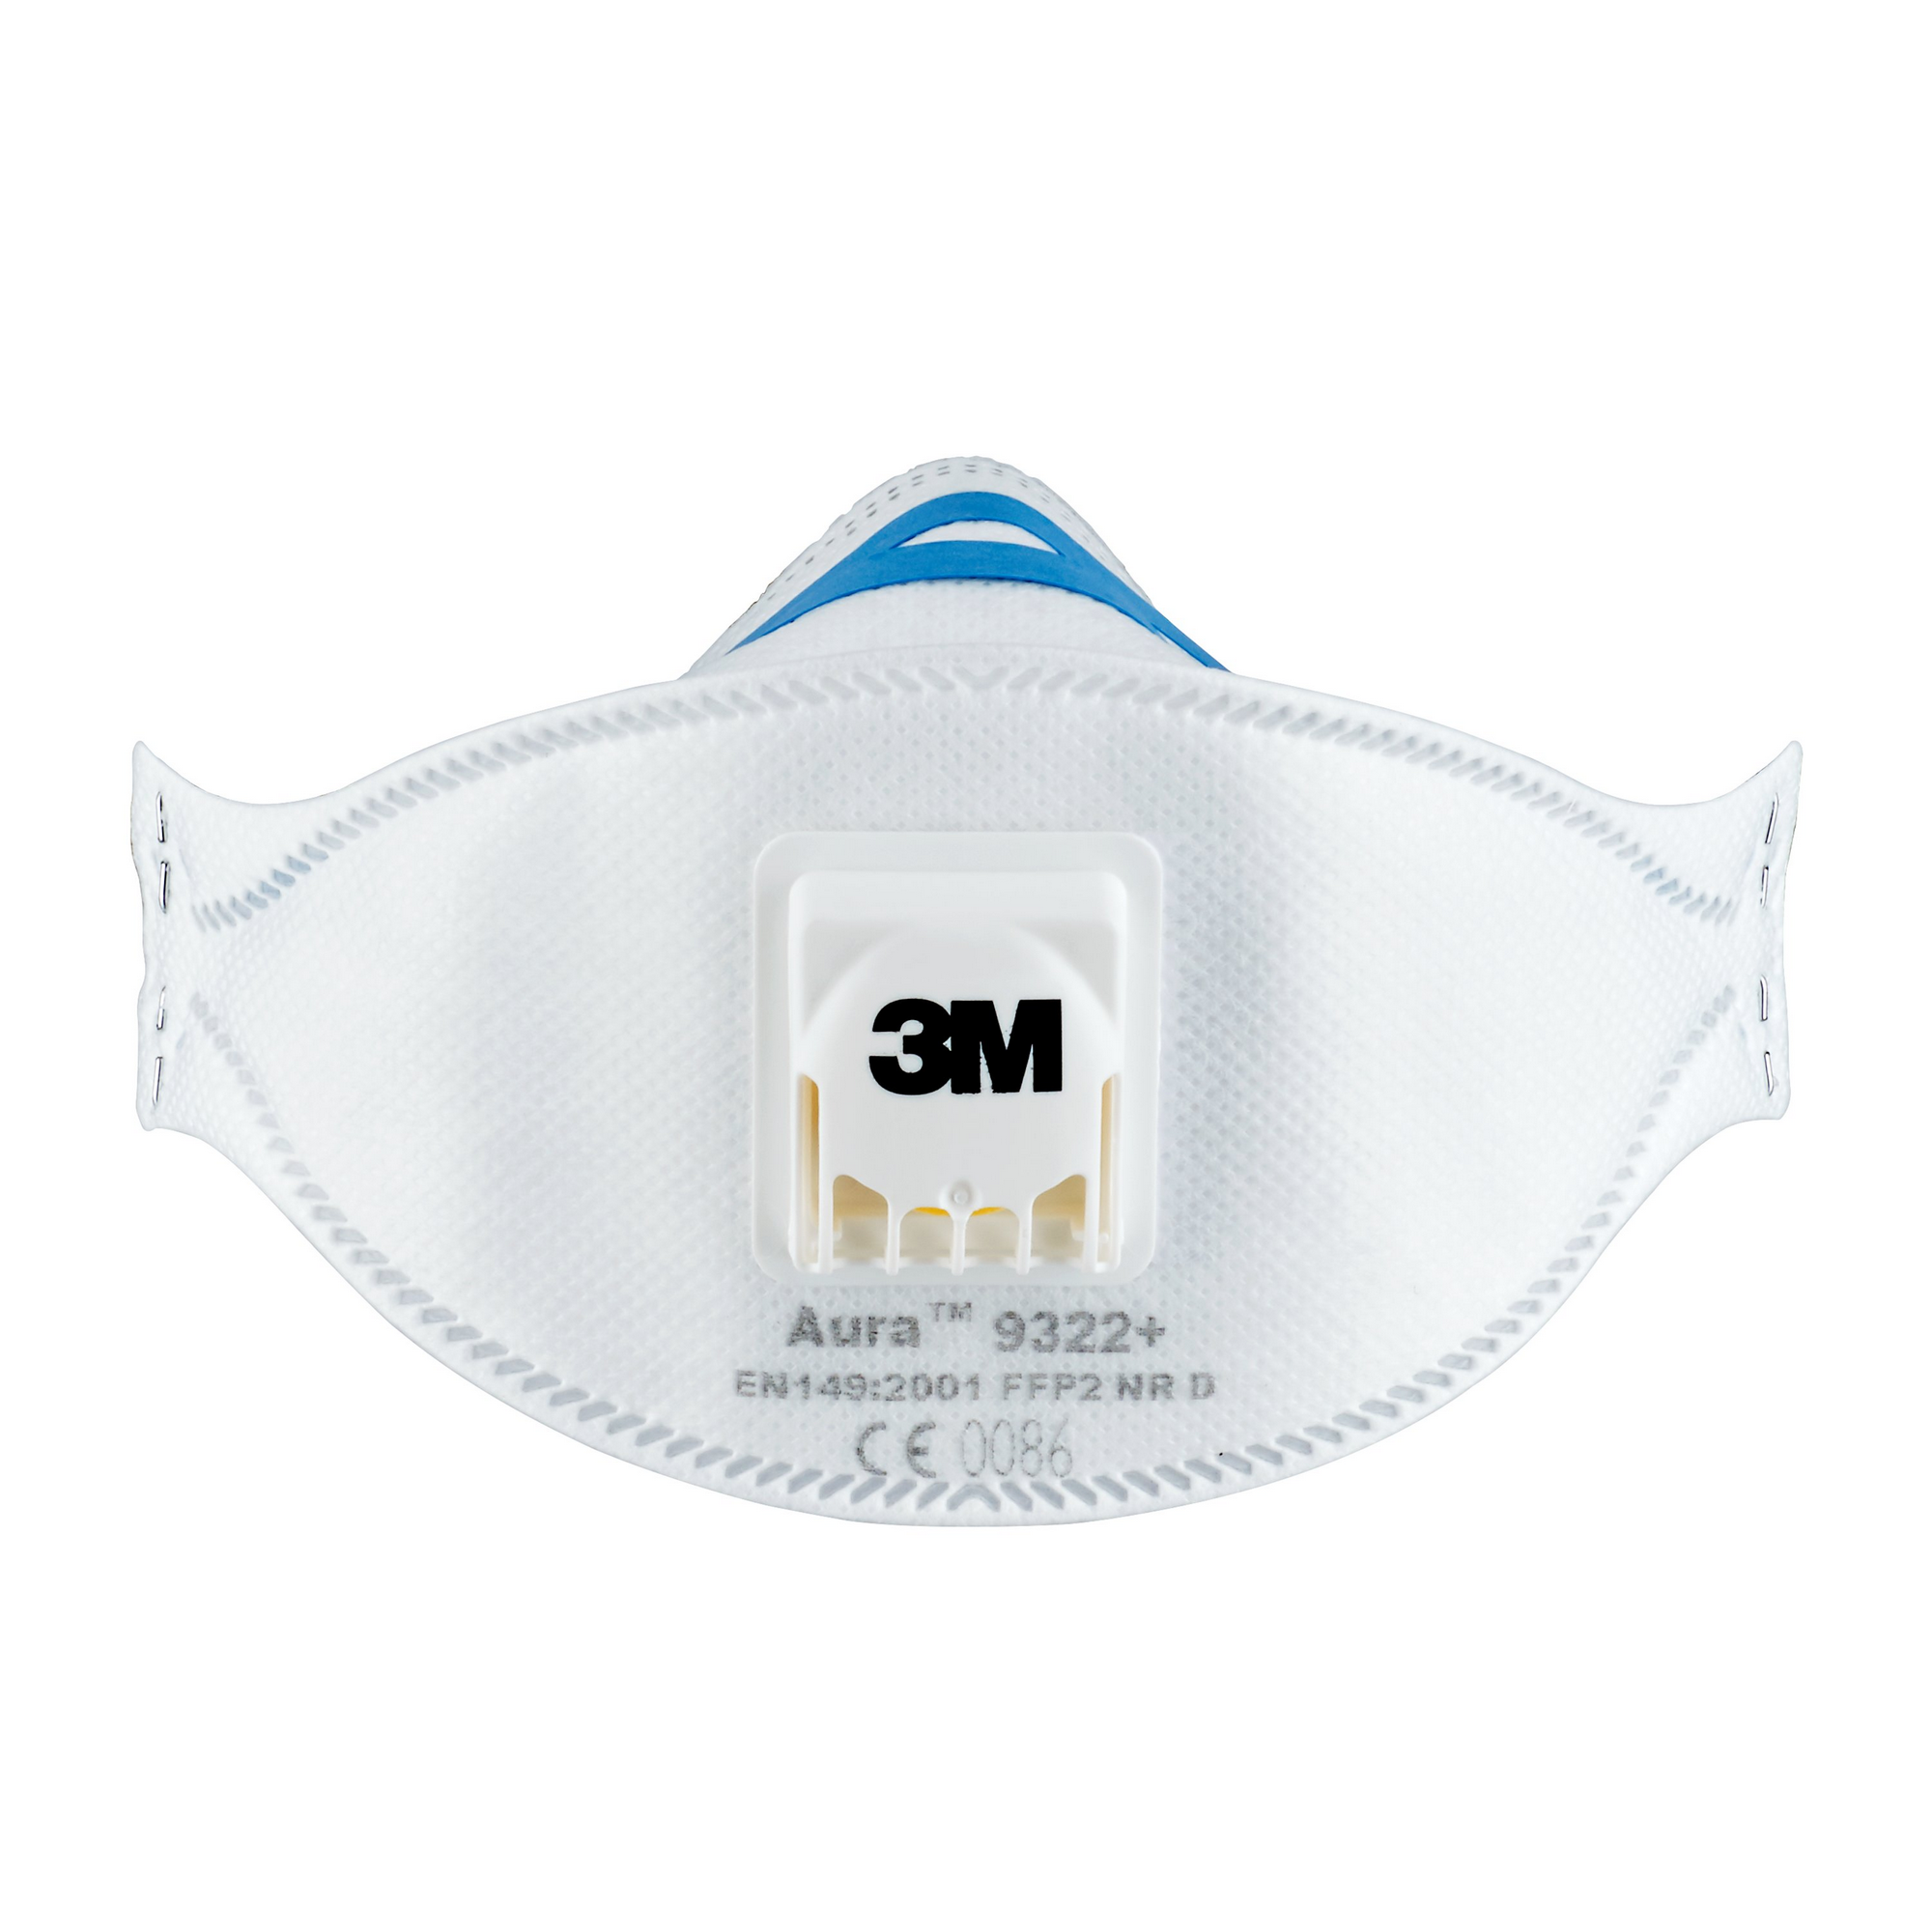 FFP2-Atemschutzmaske '9322+' mit Ventil 2 Stück + product picture